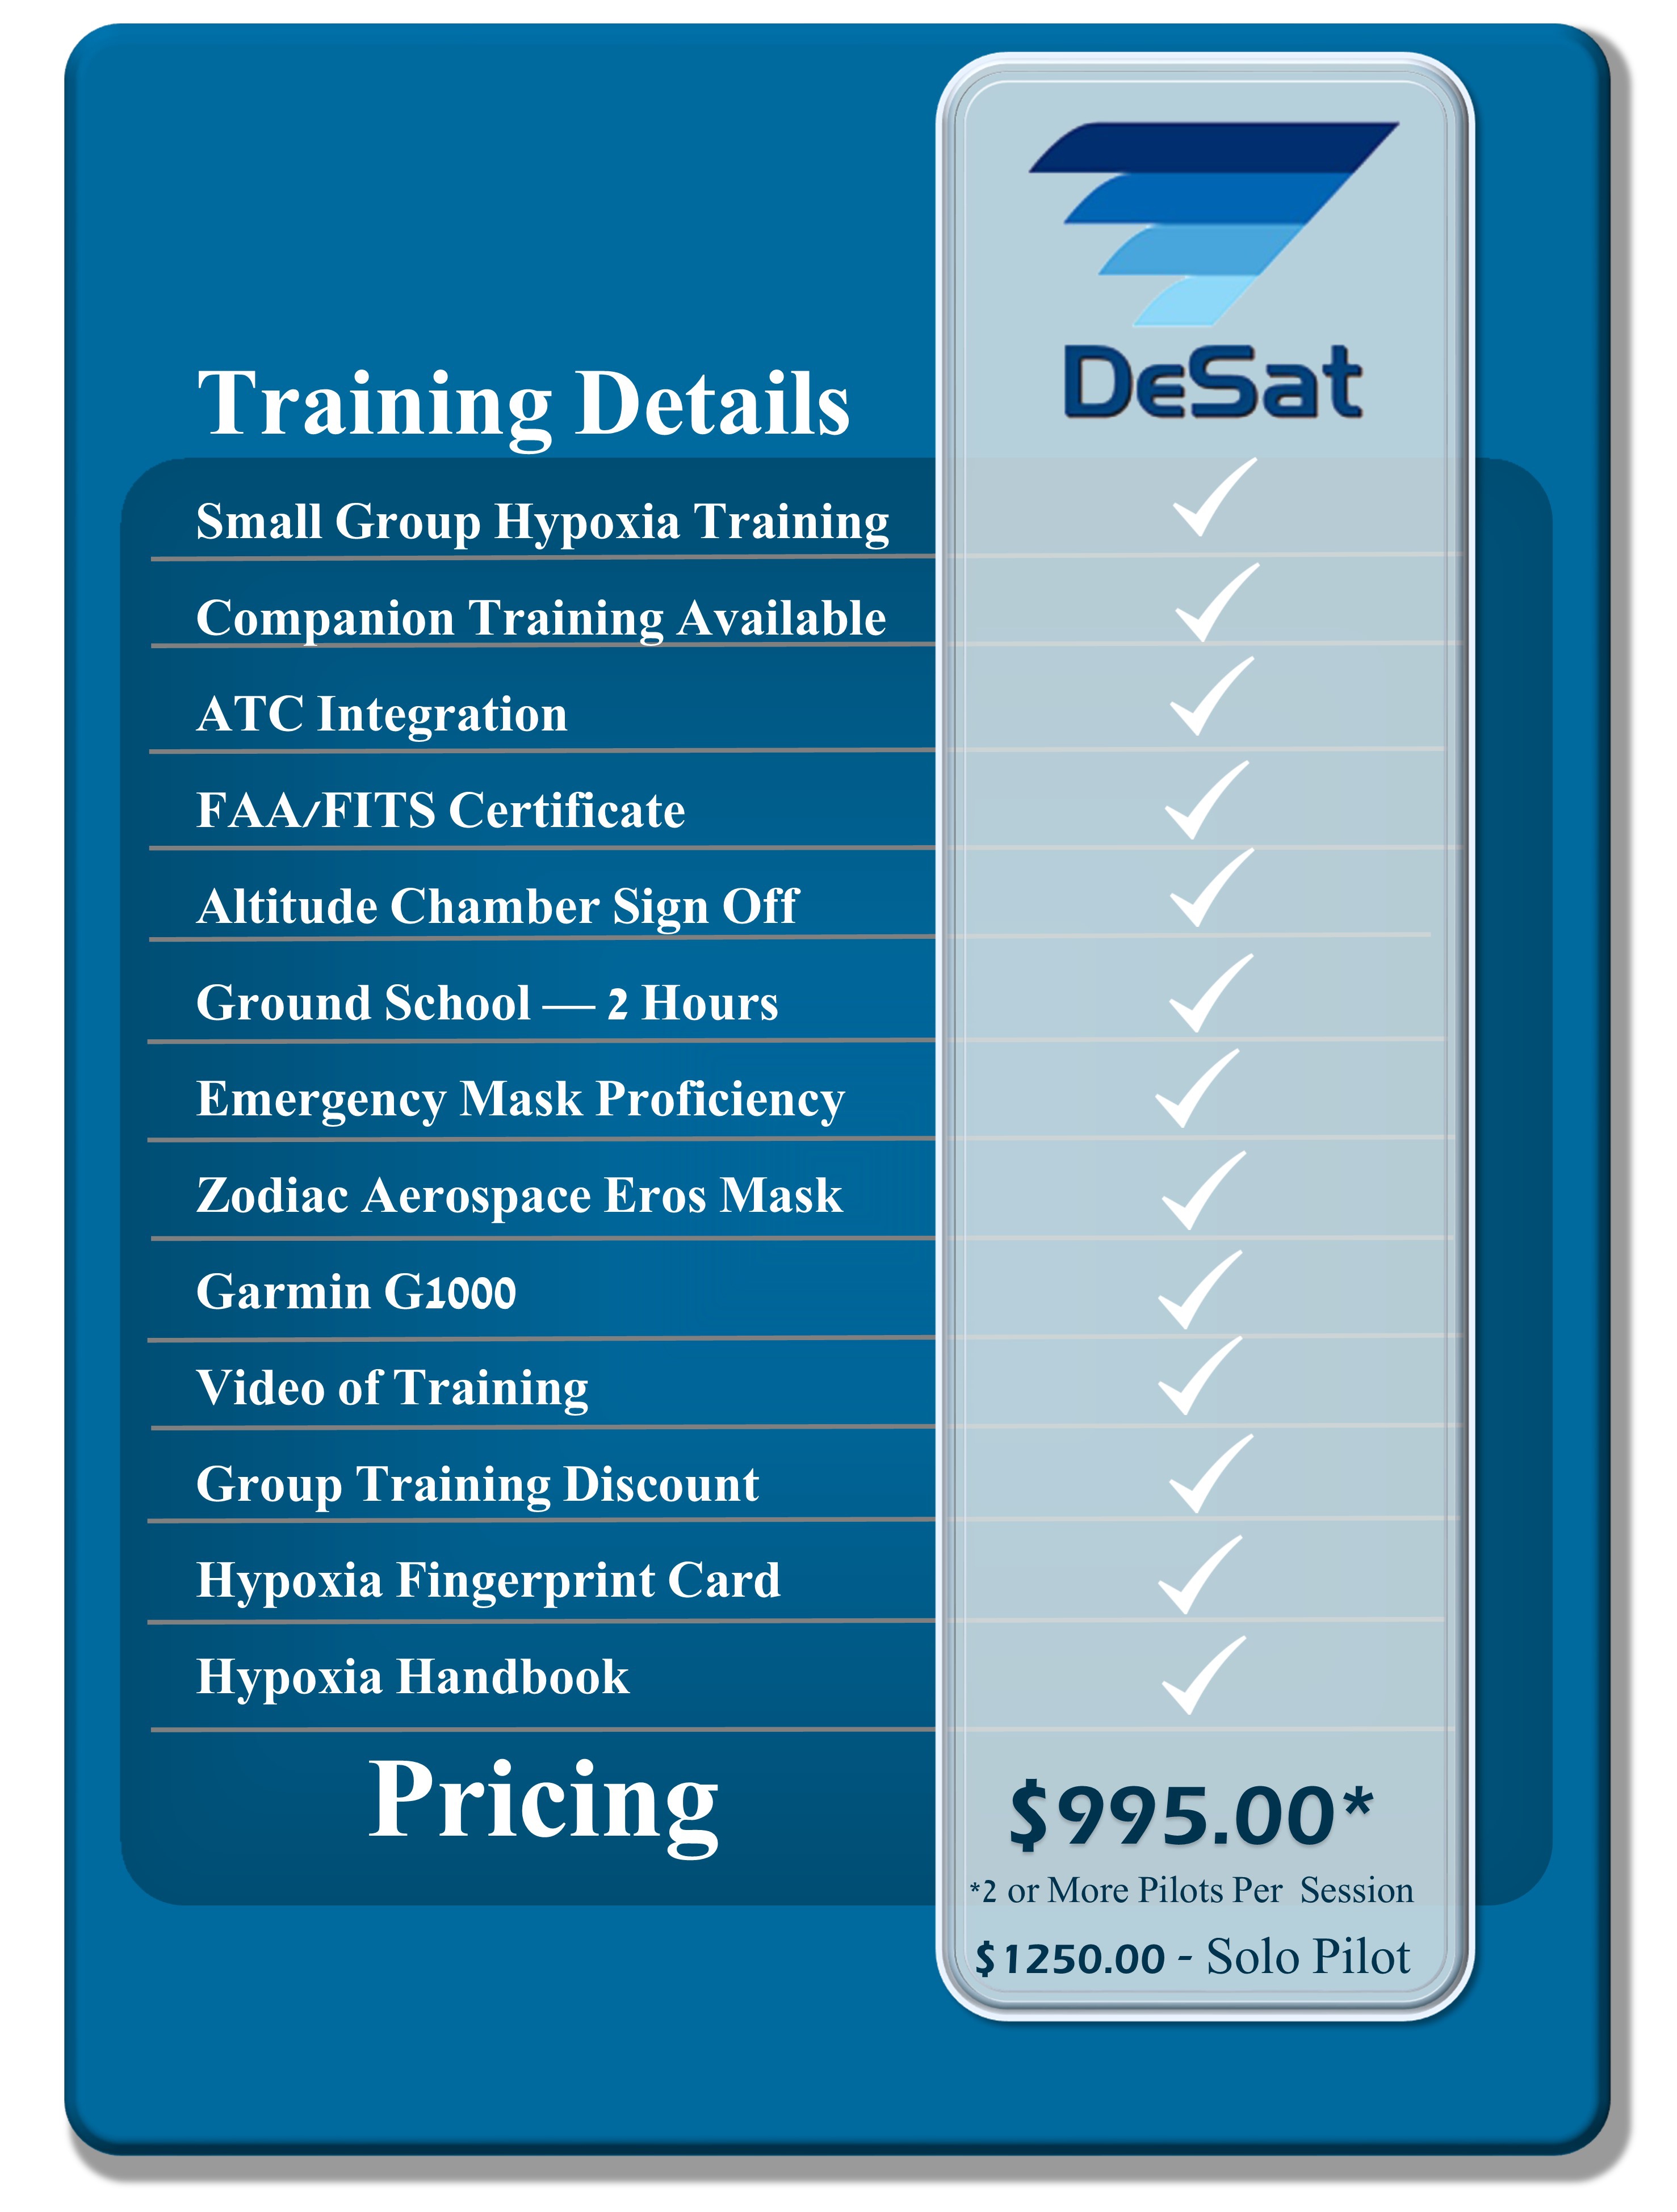 DeSat Pricing Graphic